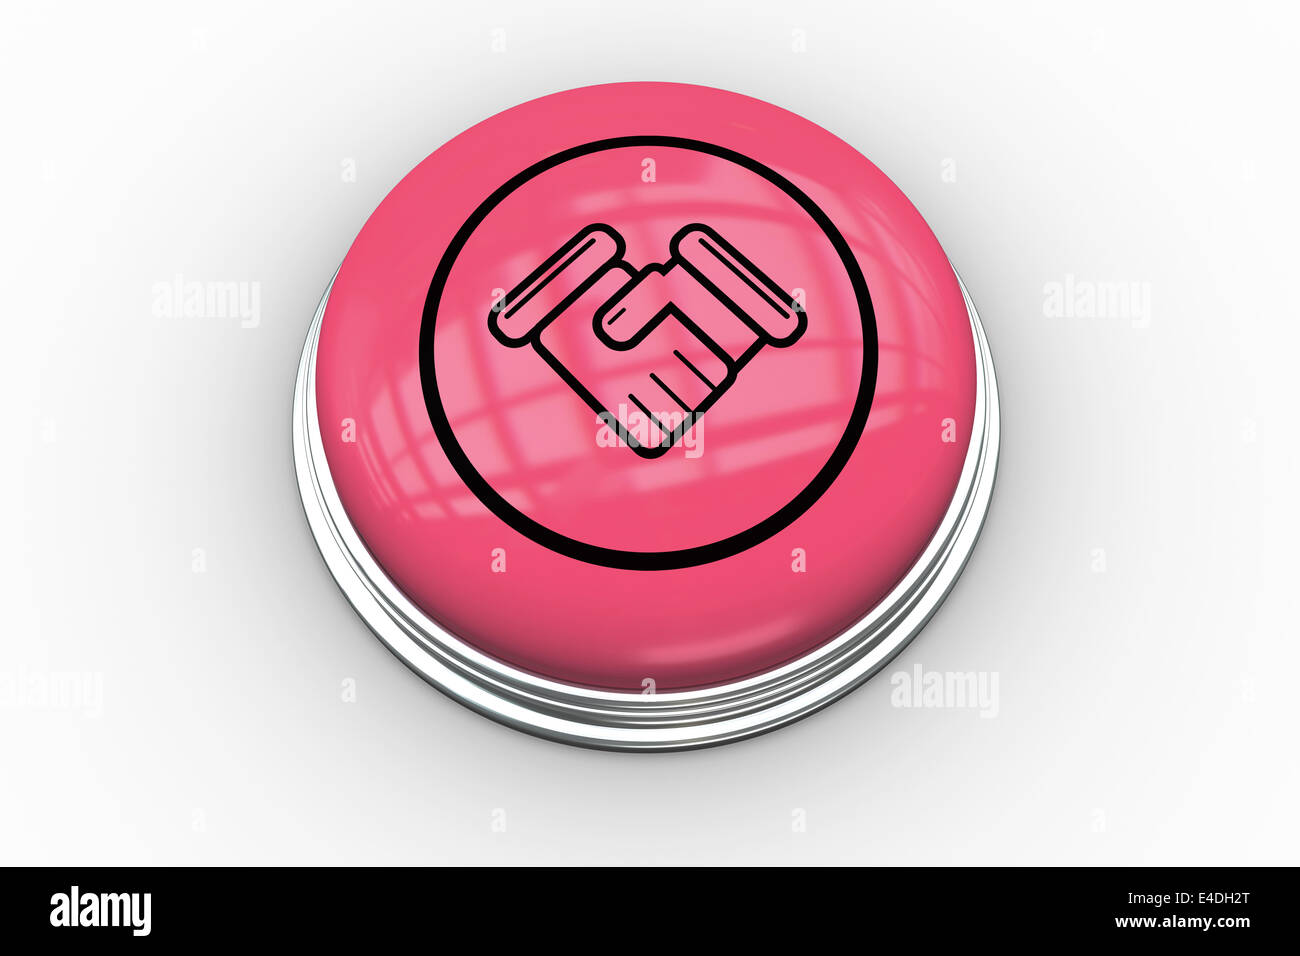 Grafico di stretta di mano sul pulsante rosa Foto Stock